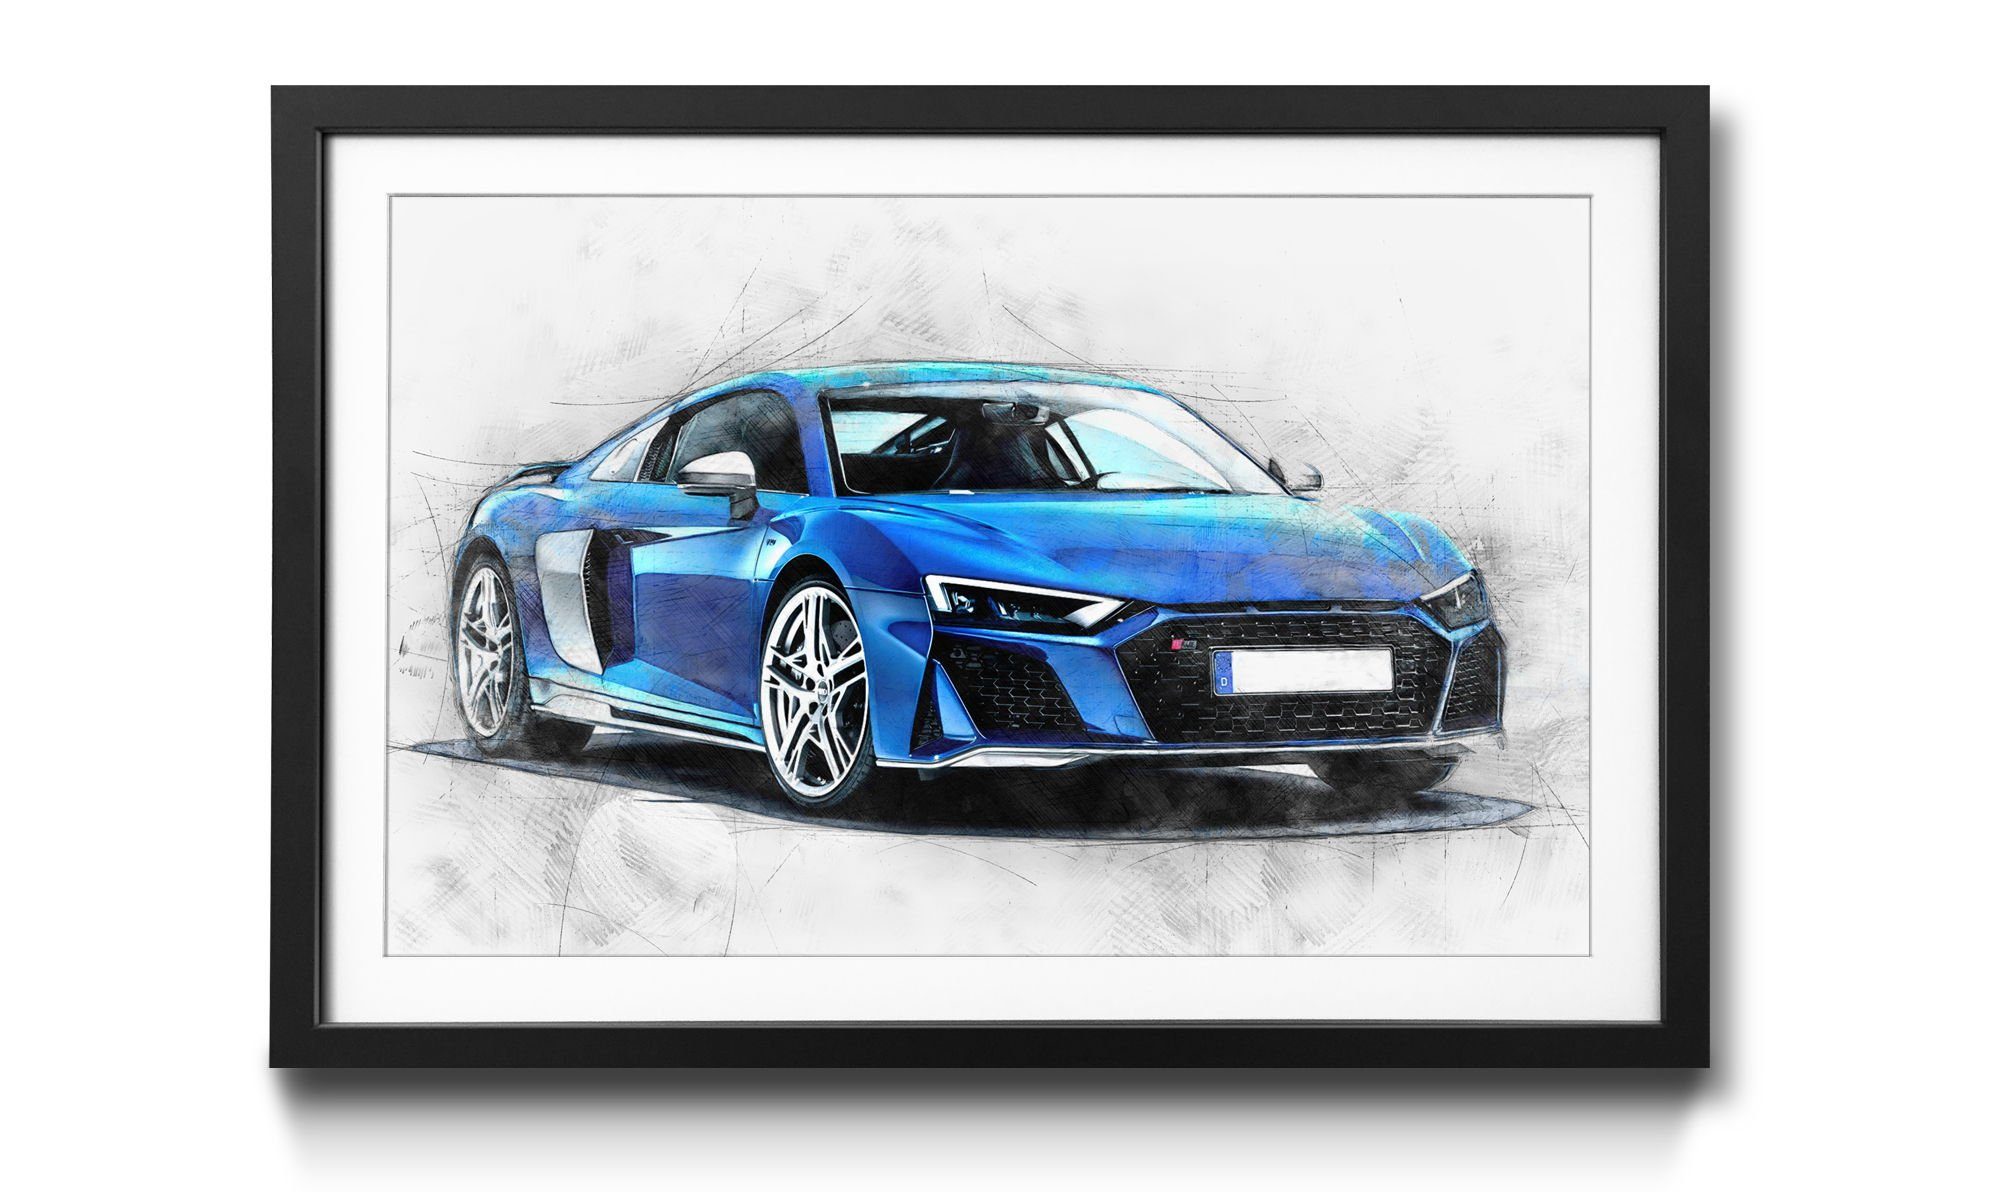 [Dies ist ein supergünstiger Versandhandel] WandbilderXXL Bild mit Wandbild, Rahmen erhältlich 4 Shaped in Blue, Größen Auto